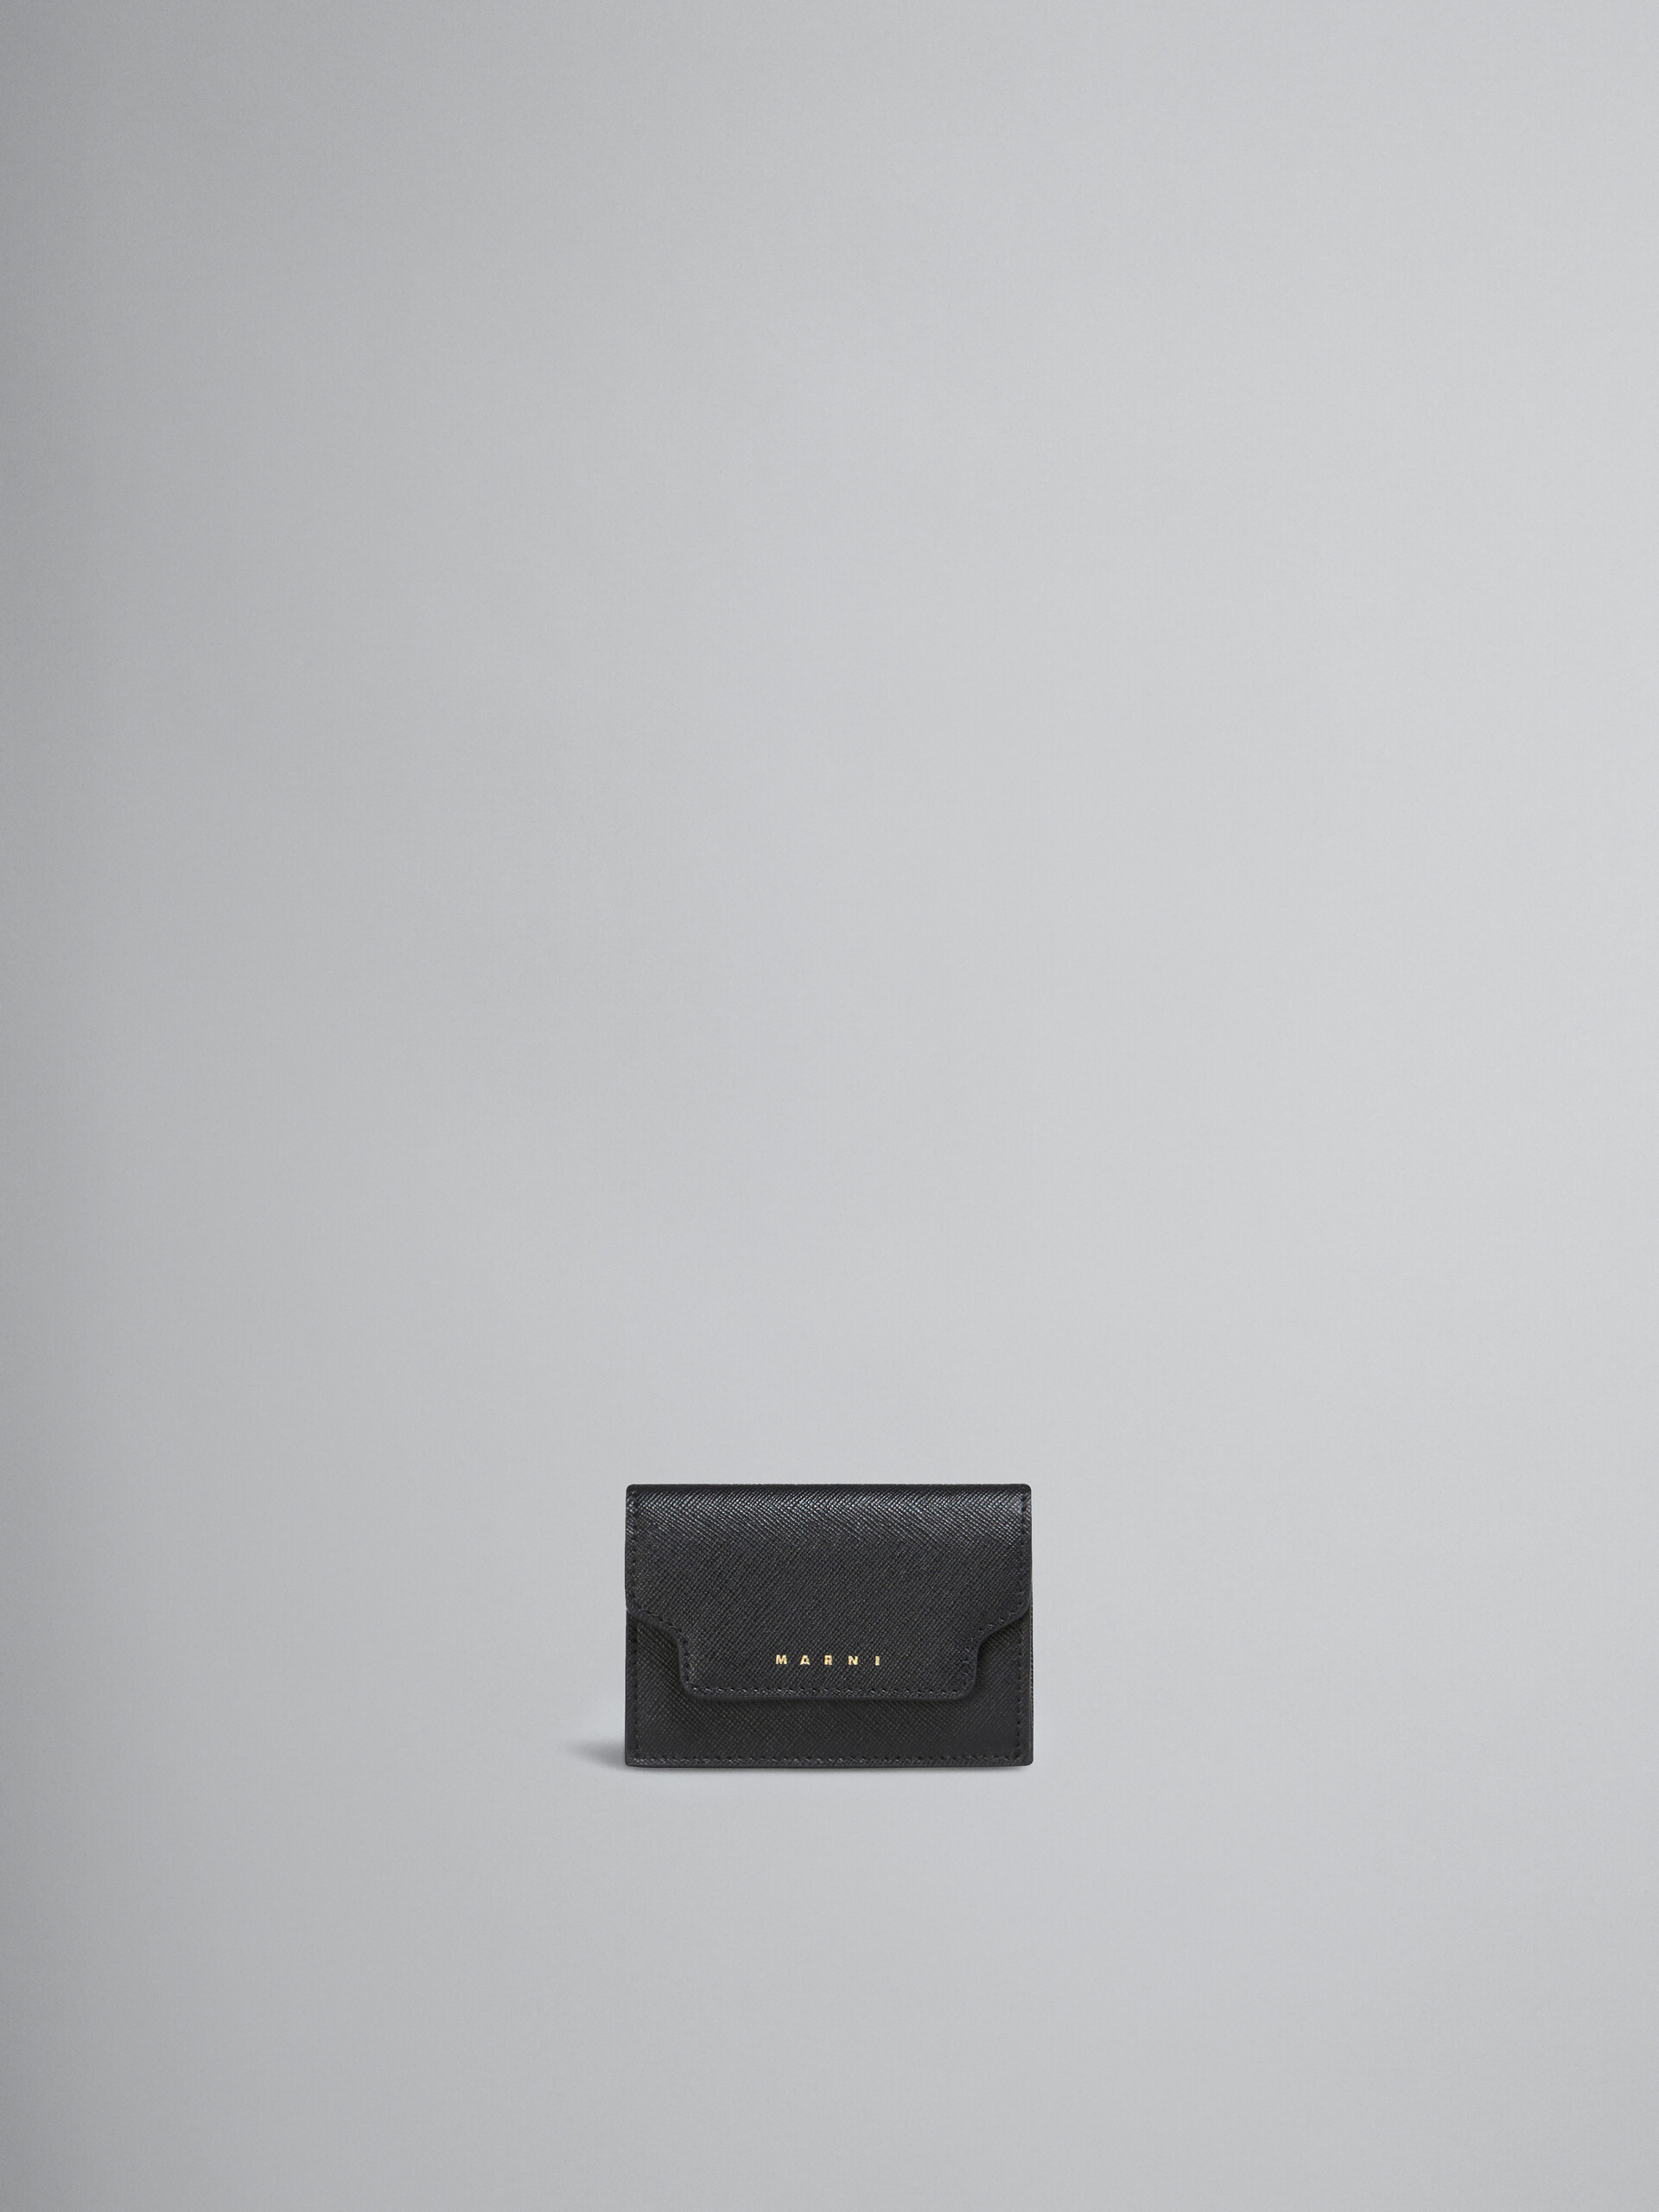 サフィアーノレザー ブラック 三つ折りウォレット - 財布 - Image 1